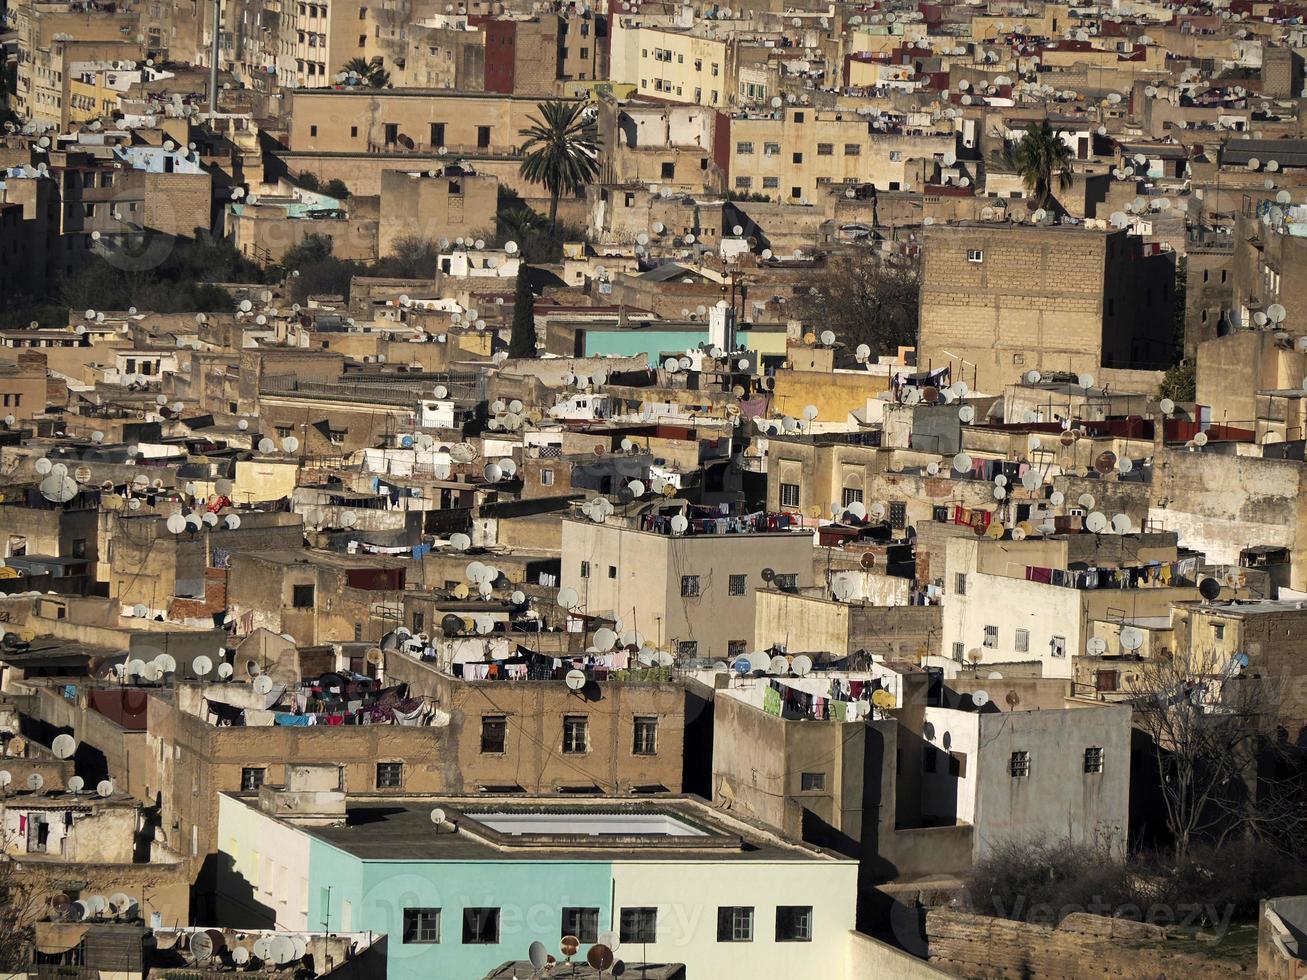 vue aérienne panorama de la médina de fez el bali maroc. fes el bali a été fondée comme capitale de la dynastie idrisside entre 789 et 808 après JC. photo